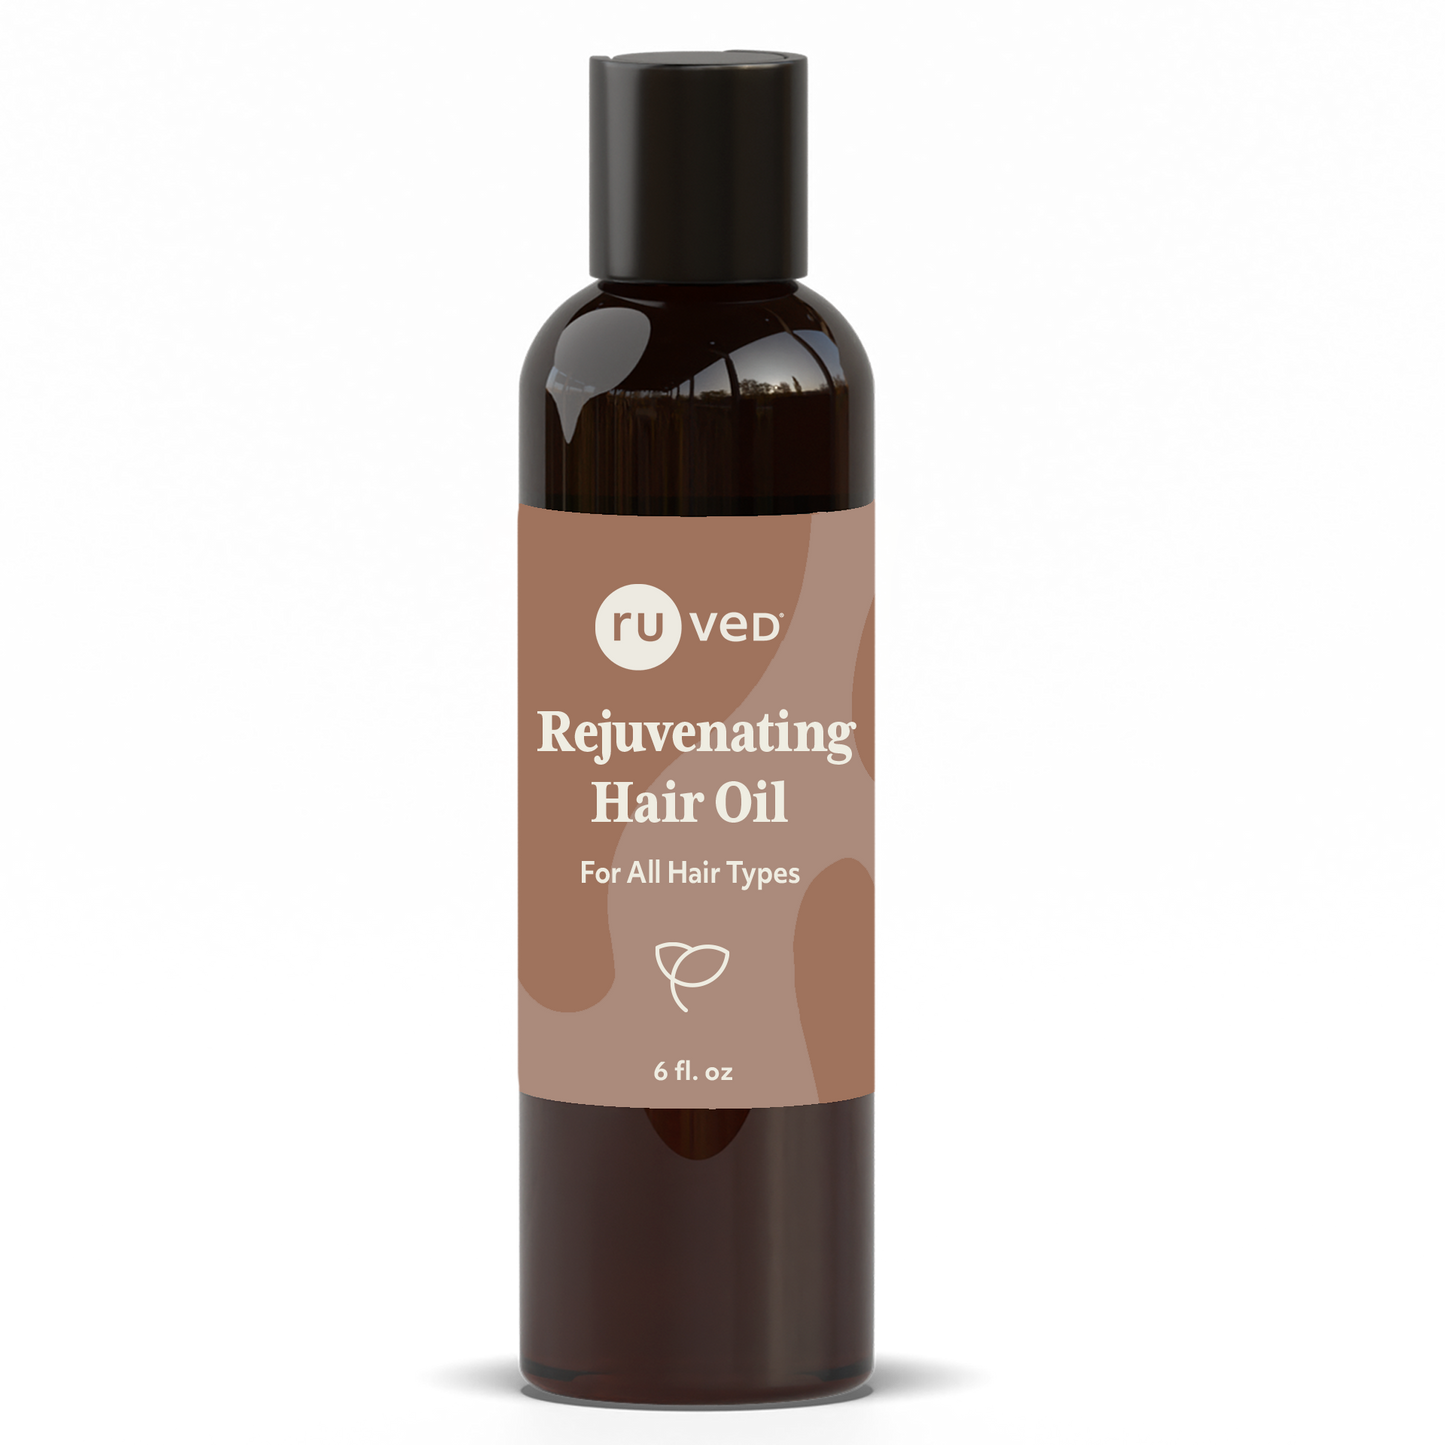 Rejuvenating Hair Oil - Luxurious blend of natural oils to Enhance Scalp Skin Health, promoting Hair Health. 100ml Bottle.